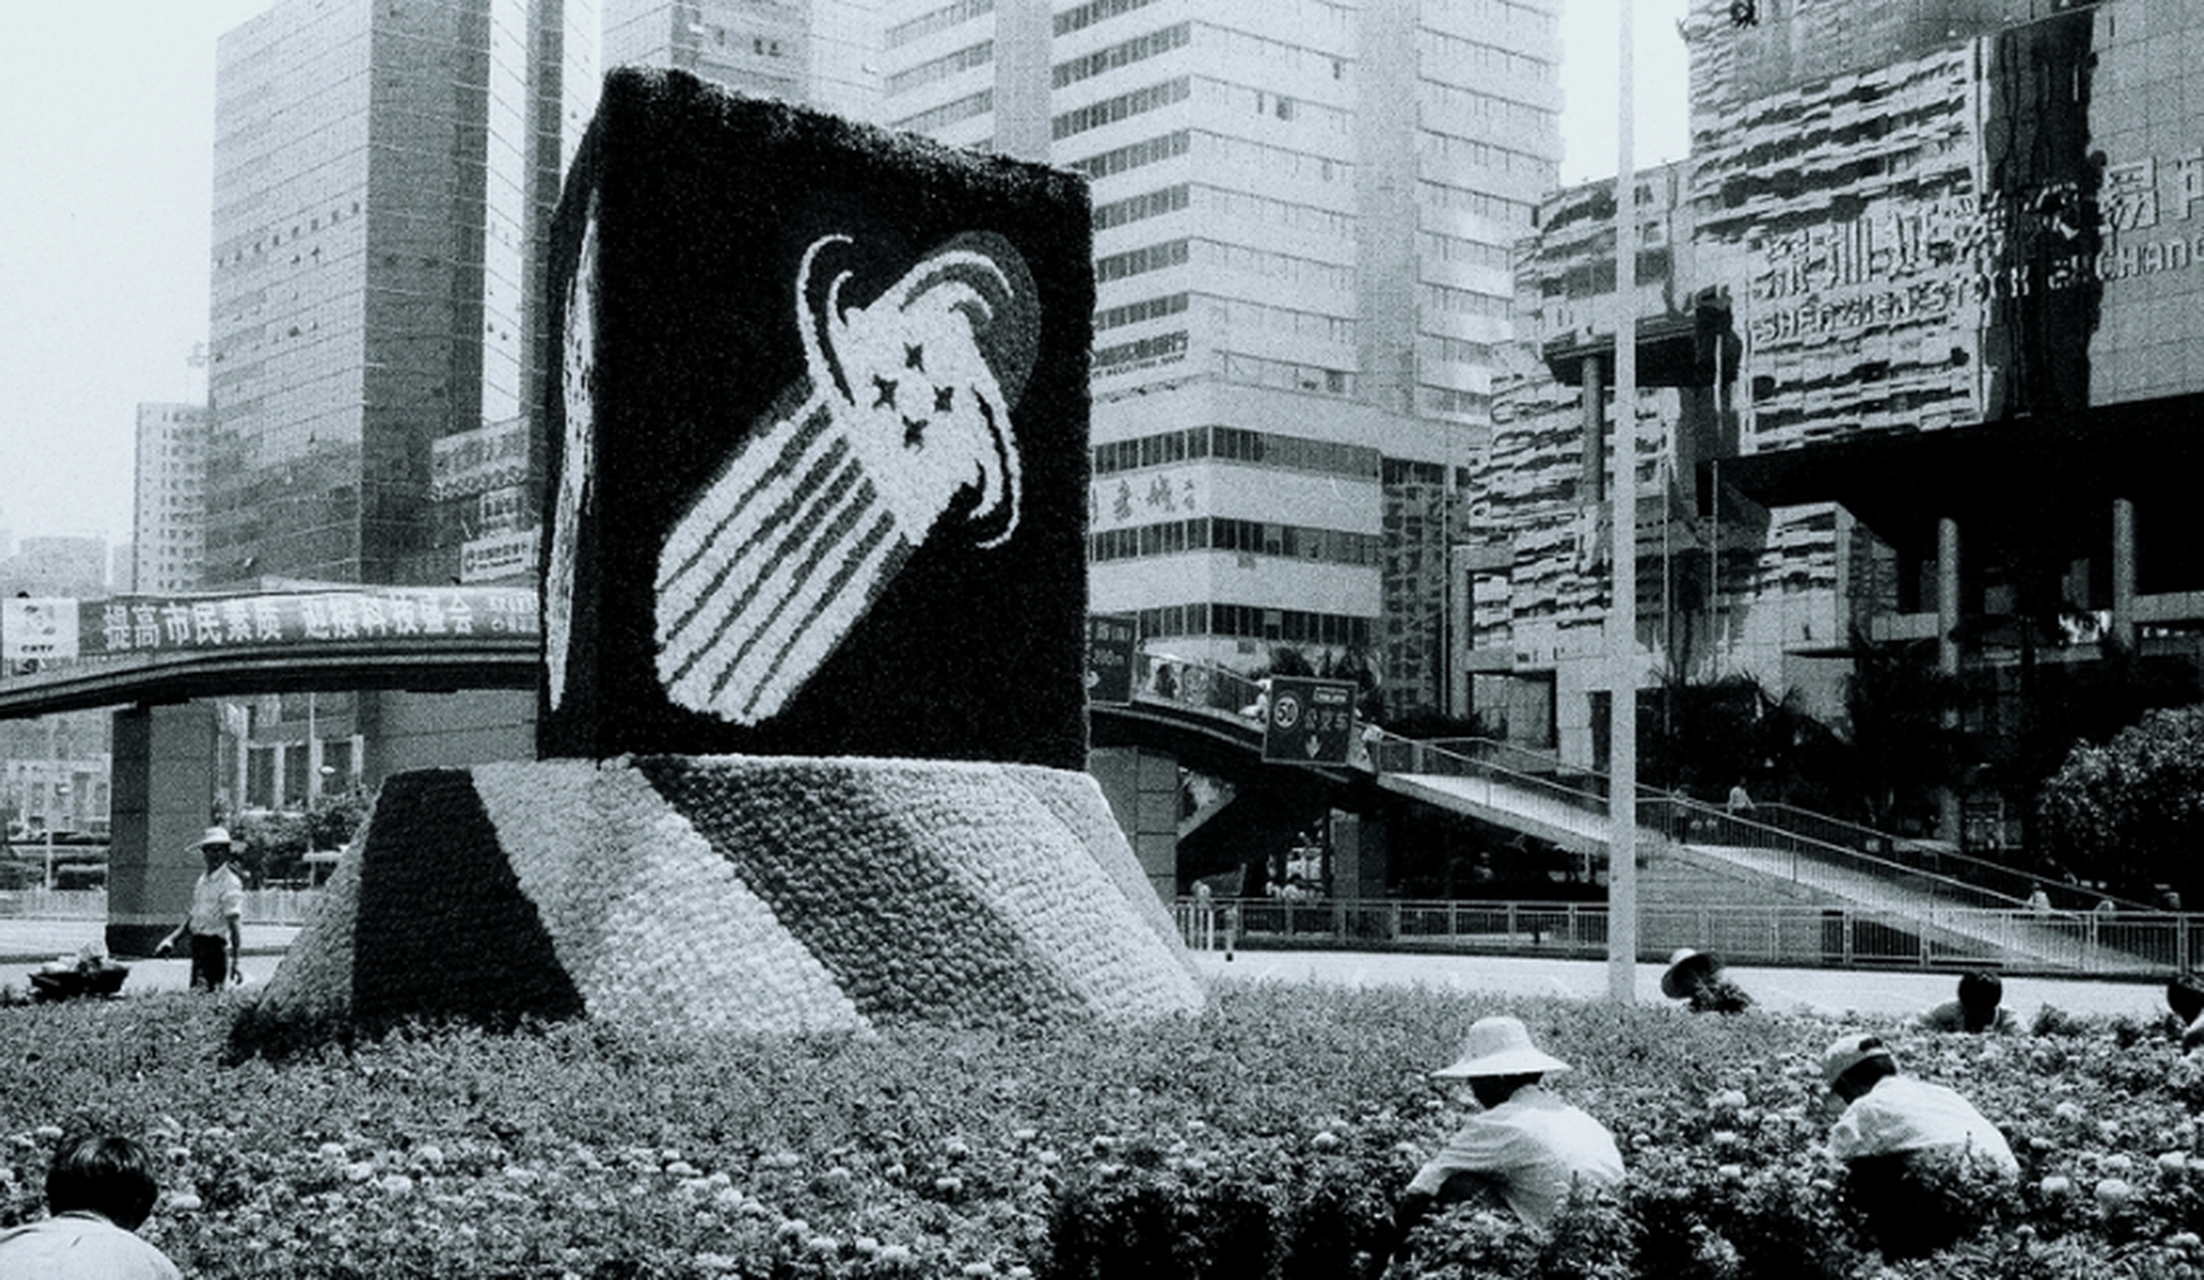 2002年深圳图片